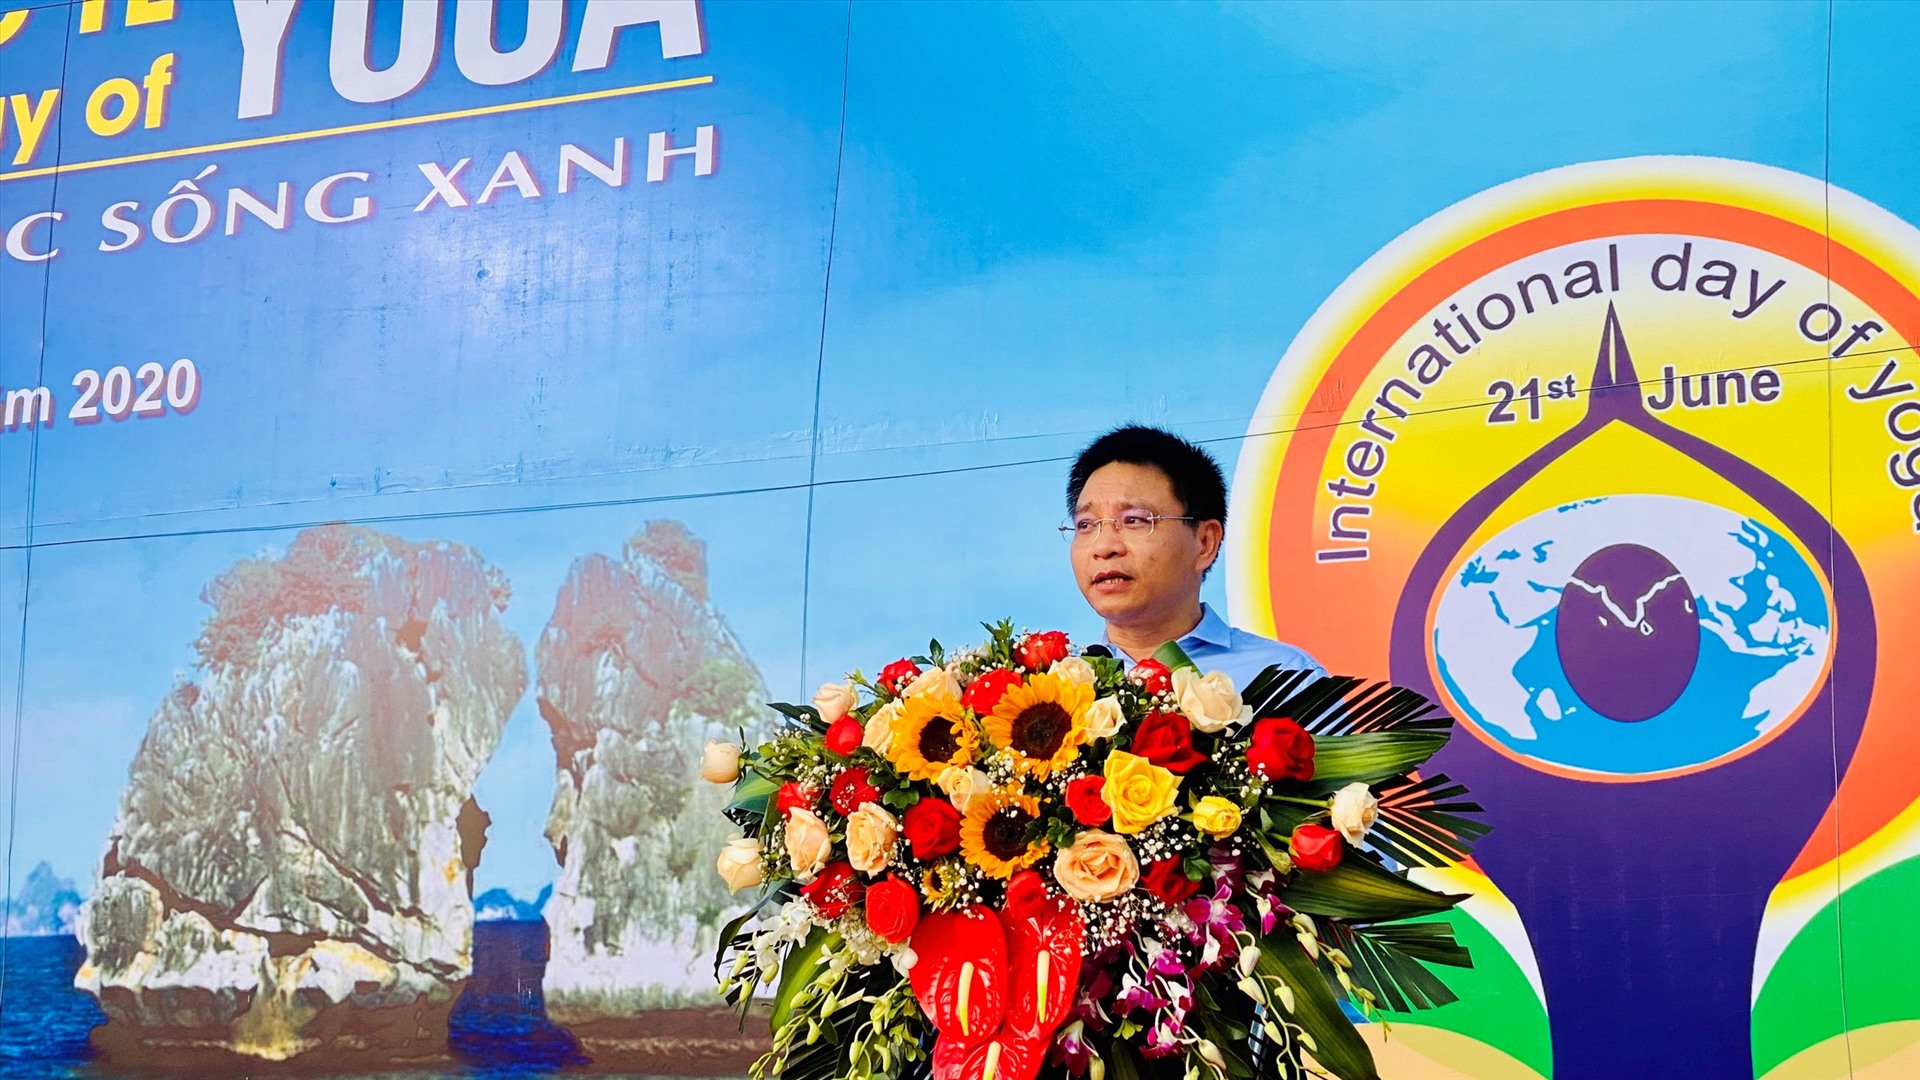 Ông Nguyễn Văn Thắng - Chủ tịch UBND tỉnh Quảng Ninh - phát biểu khai mạc “Ngày quốc tế Yoga 2020“. Ảnh: Nguyễn Hùng